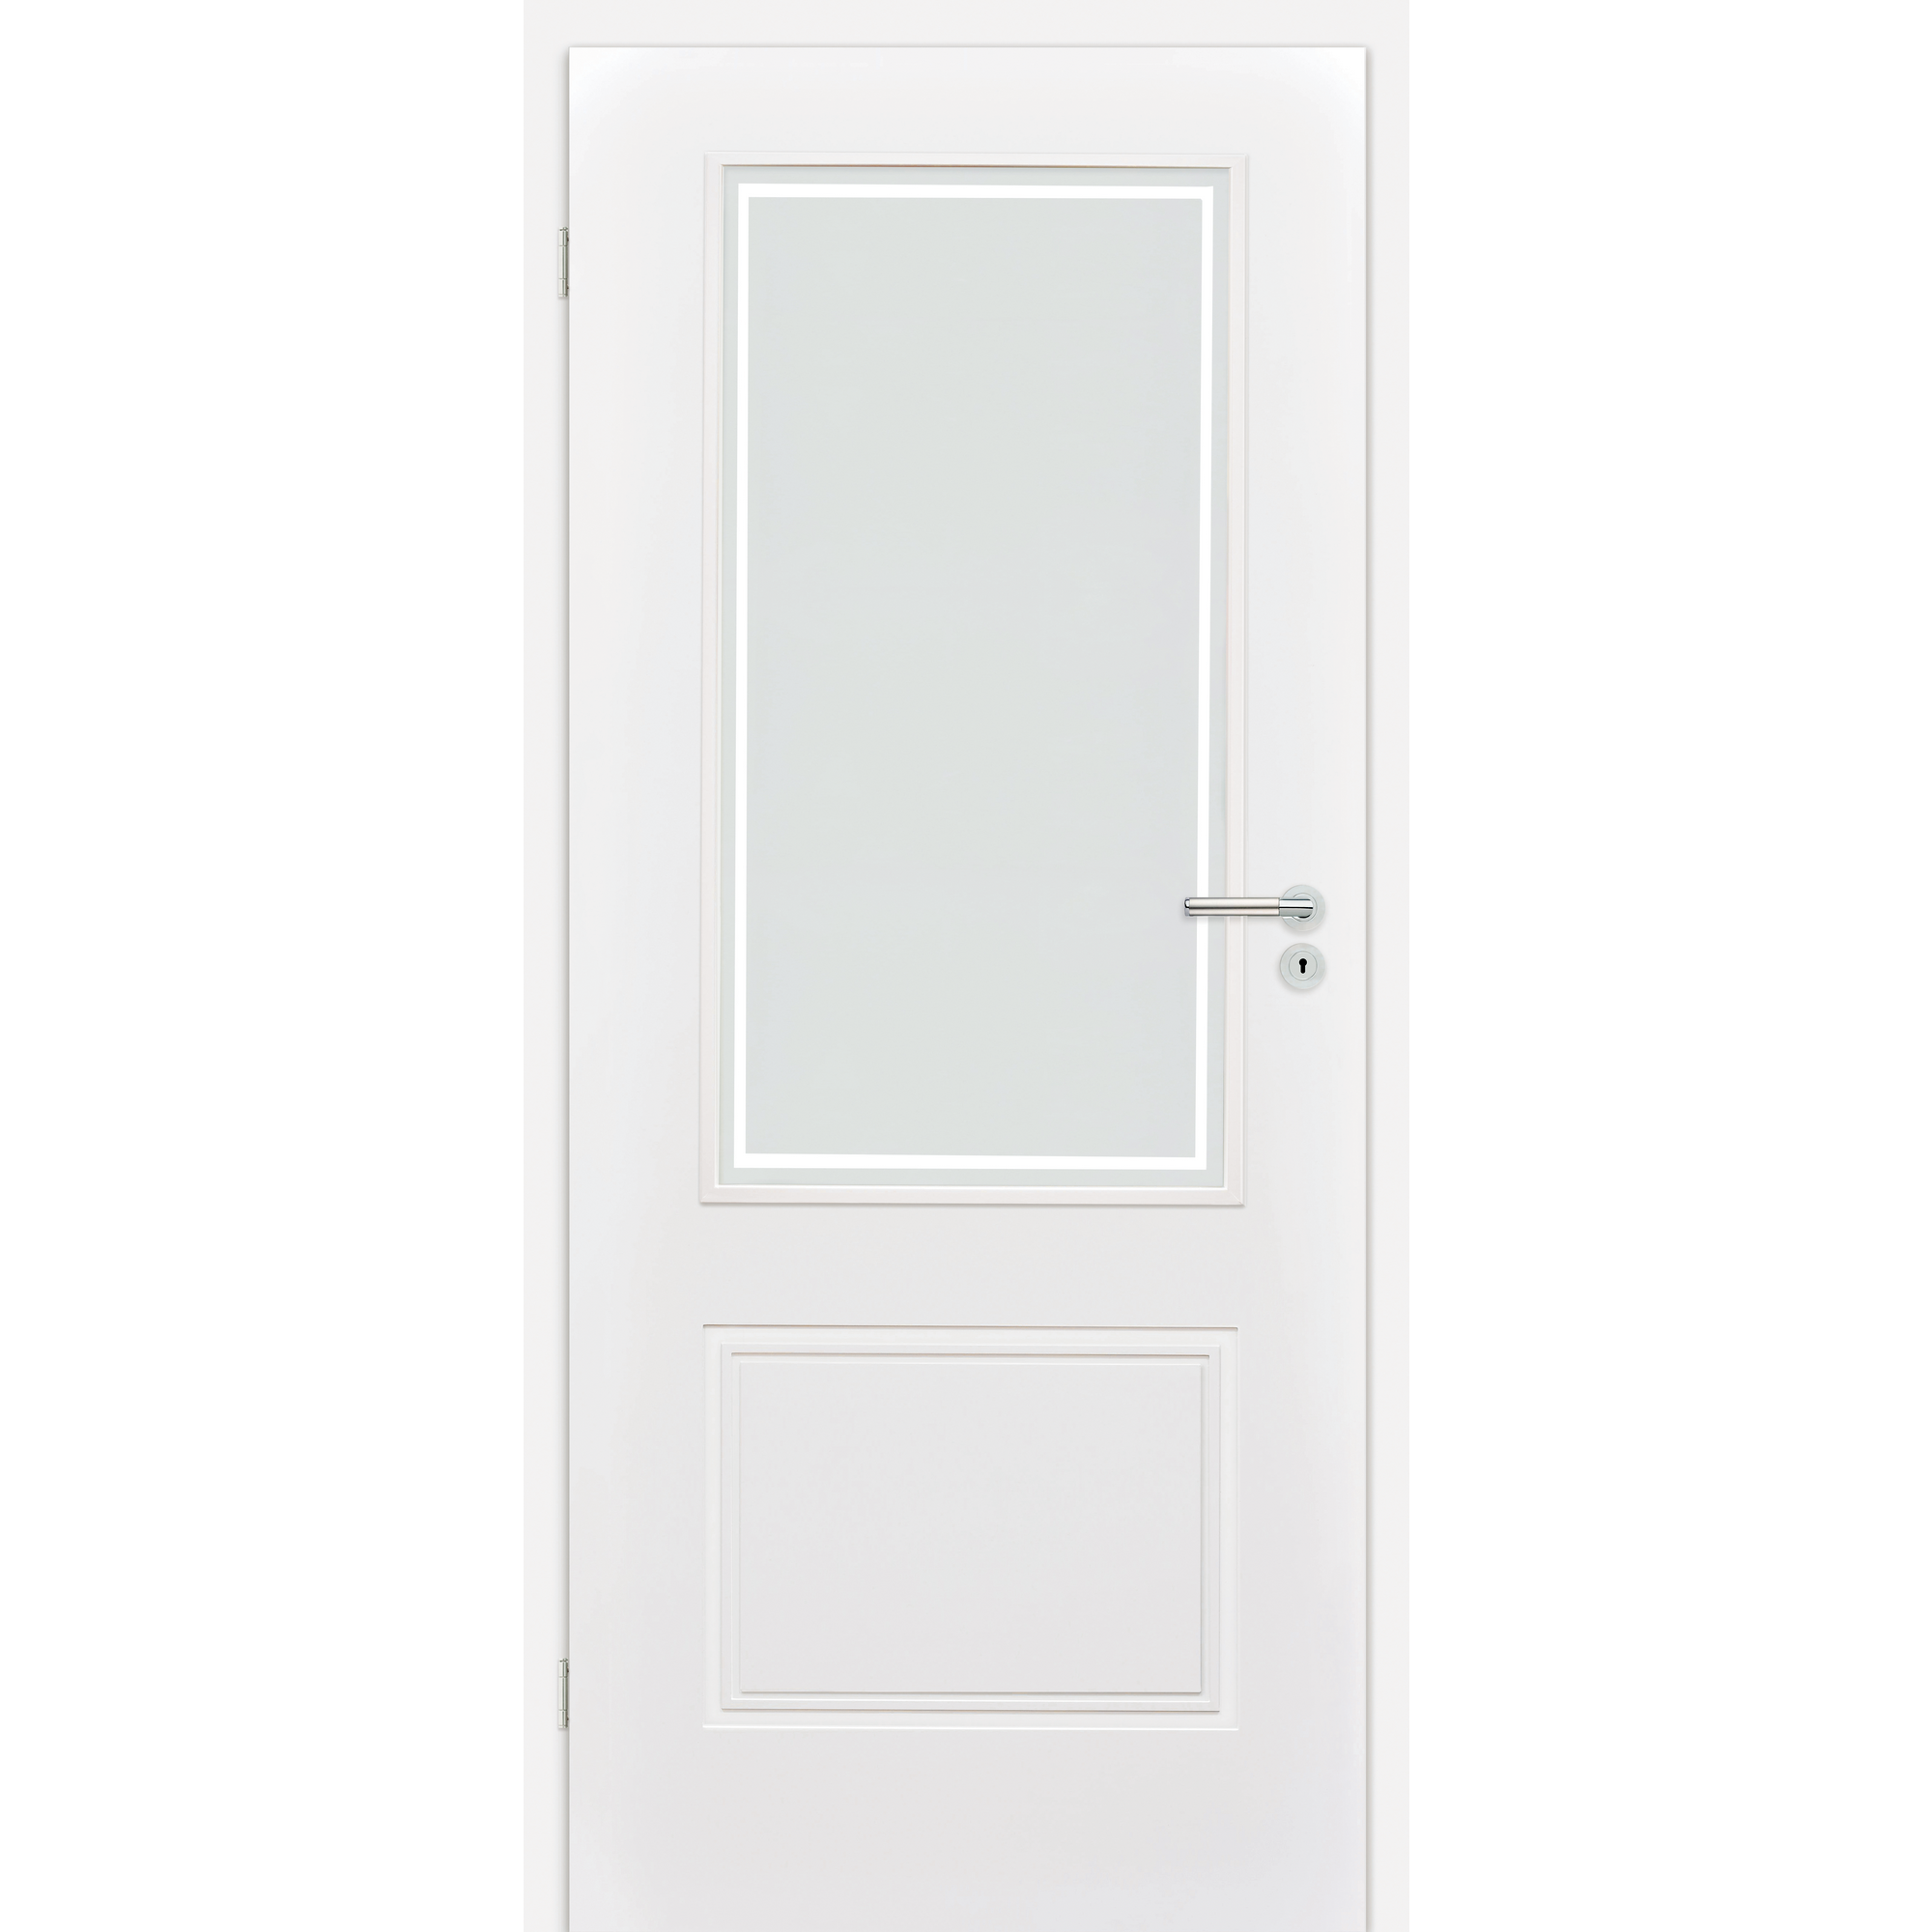 Innentür 'Linea 1.3' mit Lichtausschnitt weiß 198,5 x 61 cm, Linksanschlag + product picture